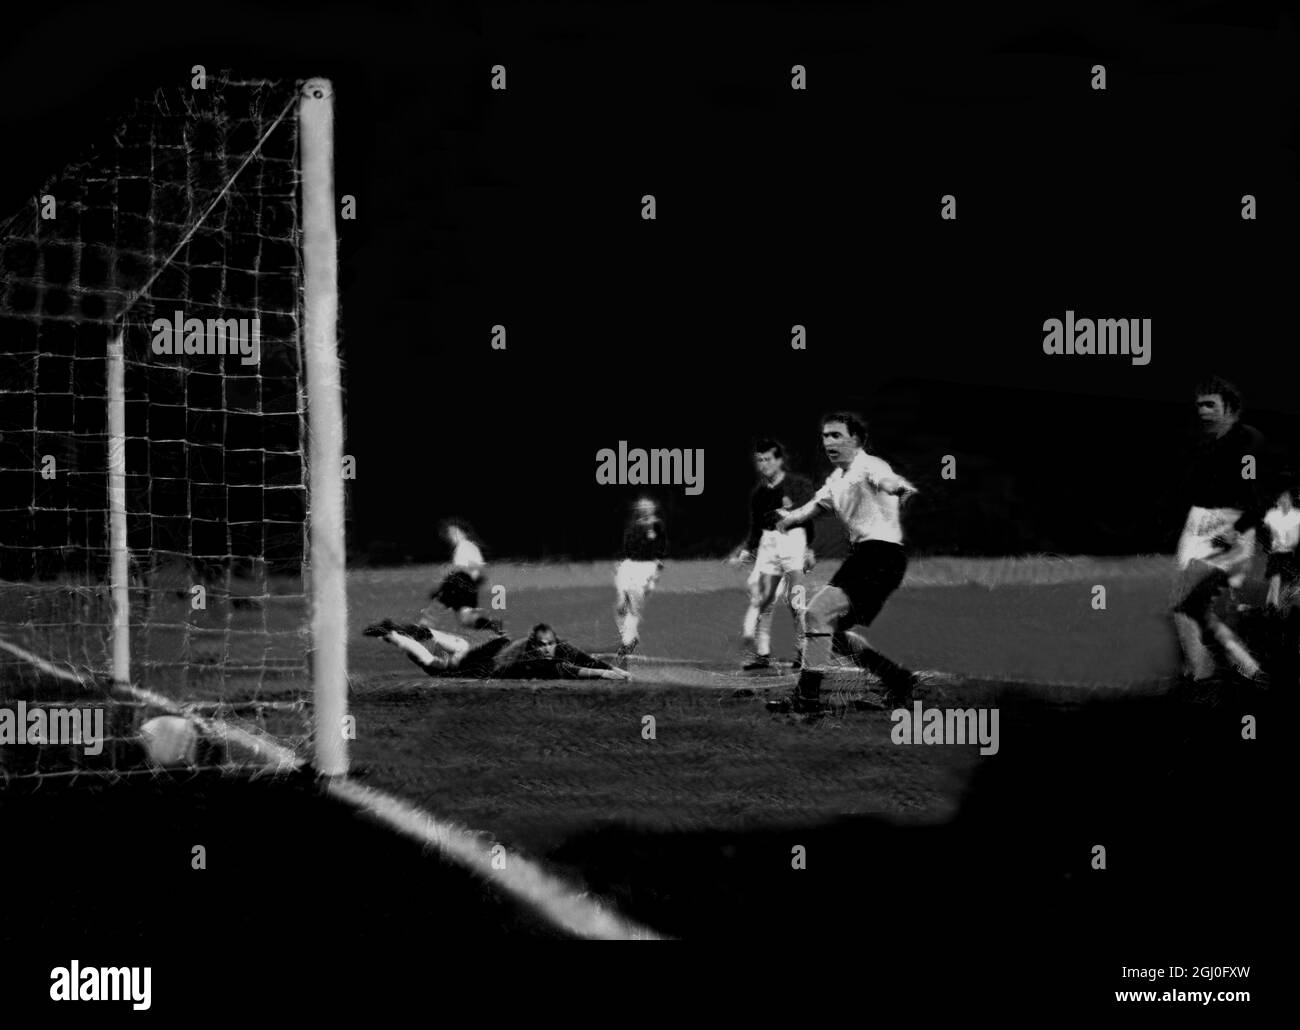 London Select 11 v Barcellona con il portiere di Barcellona spruzzato sul terreno (Estrems) la palla rotola davanti a lui per mettere la squadra di Londra in testa alla partita a Stamford Bridge 5 marzo 1958 Foto Stock